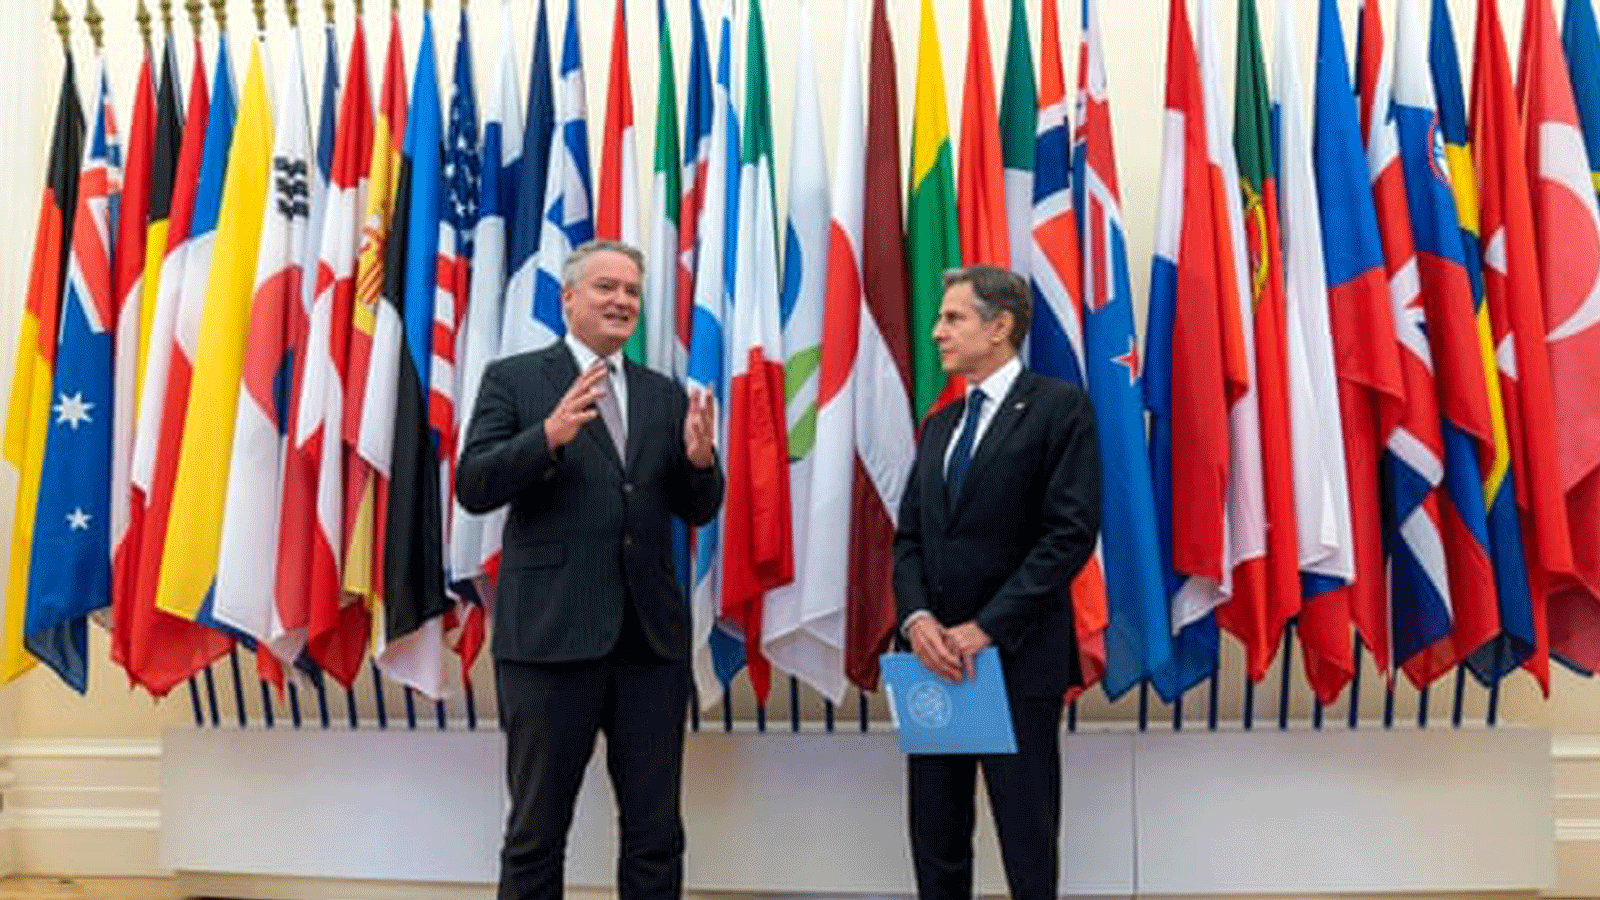  الأمين العام لمنظمة التعاون الاقتصادي والتنمية، ماتياس كورمان، مع وزير الخارجية الأمريكي، أنتوني بلينكين (إلى اليمين)، في مقر المنظمة في باريس